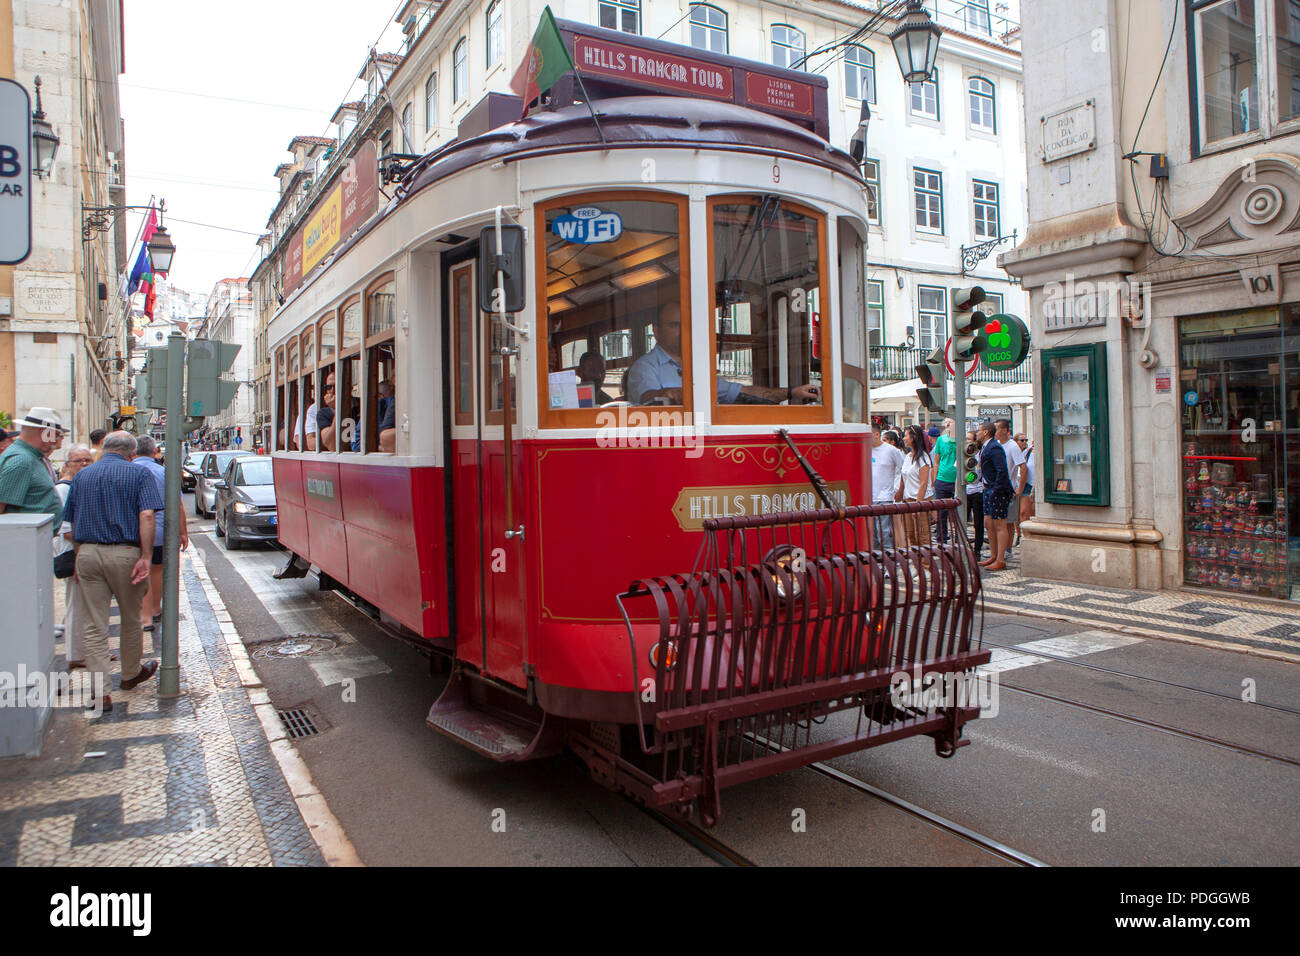 Tranvía de Lisboa en el barrio de la Alfama, en Lisboa, Portugal. Foto de stock